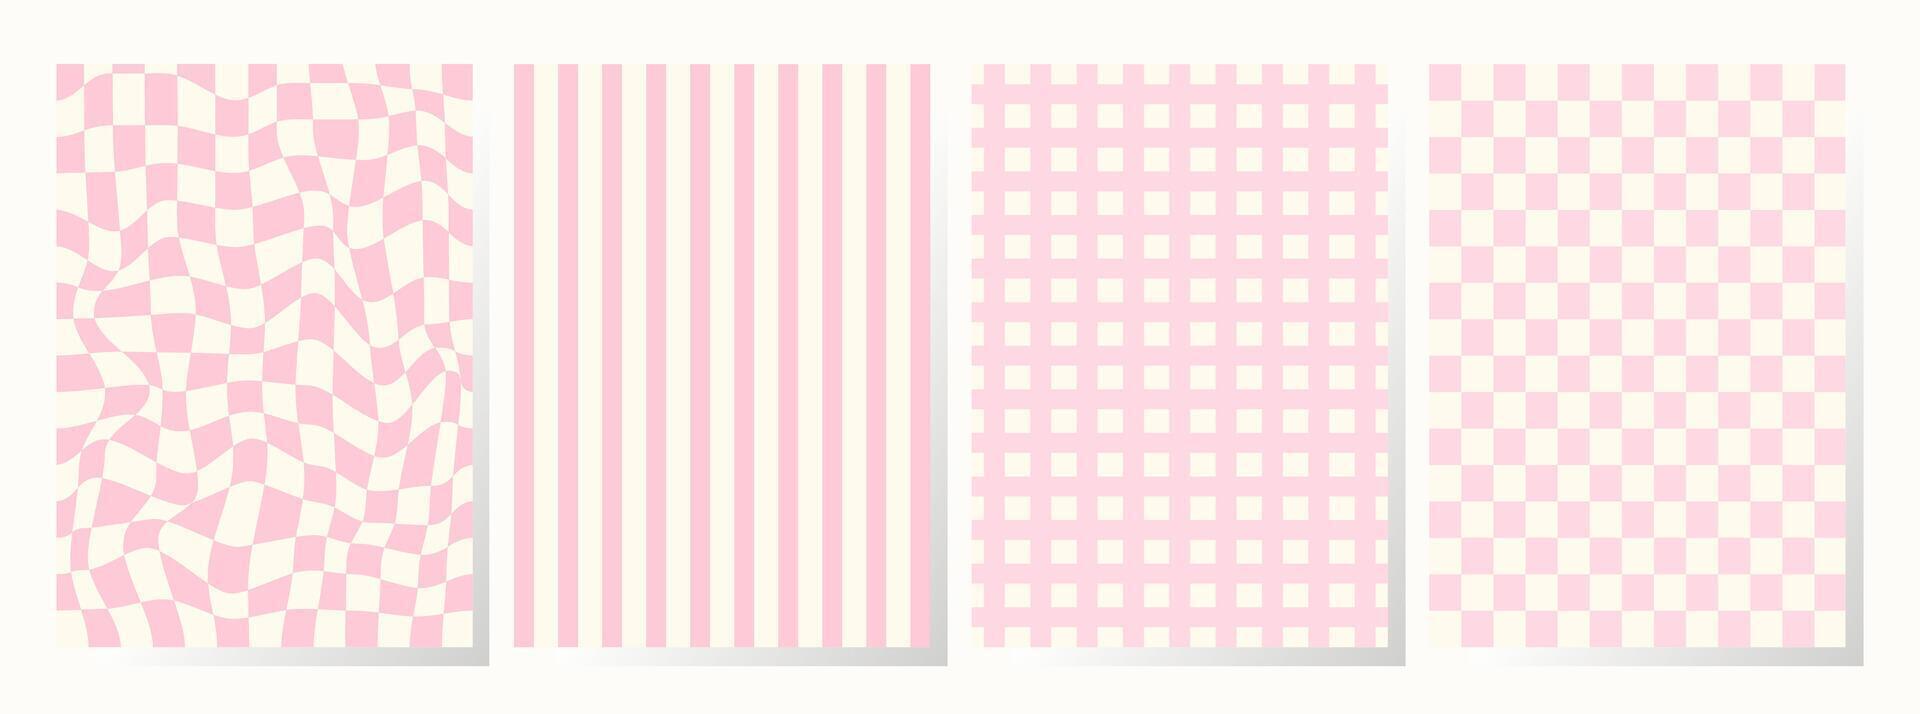 reeks van retro achtergronden in roze kleuren. verzameling groovy geruit patroon in modieus retro y2k stijl. wijnoogst esthetisch psychedelisch schaakbord structuur van de jaren 60-70. funky hippie textiel afdrukken vector